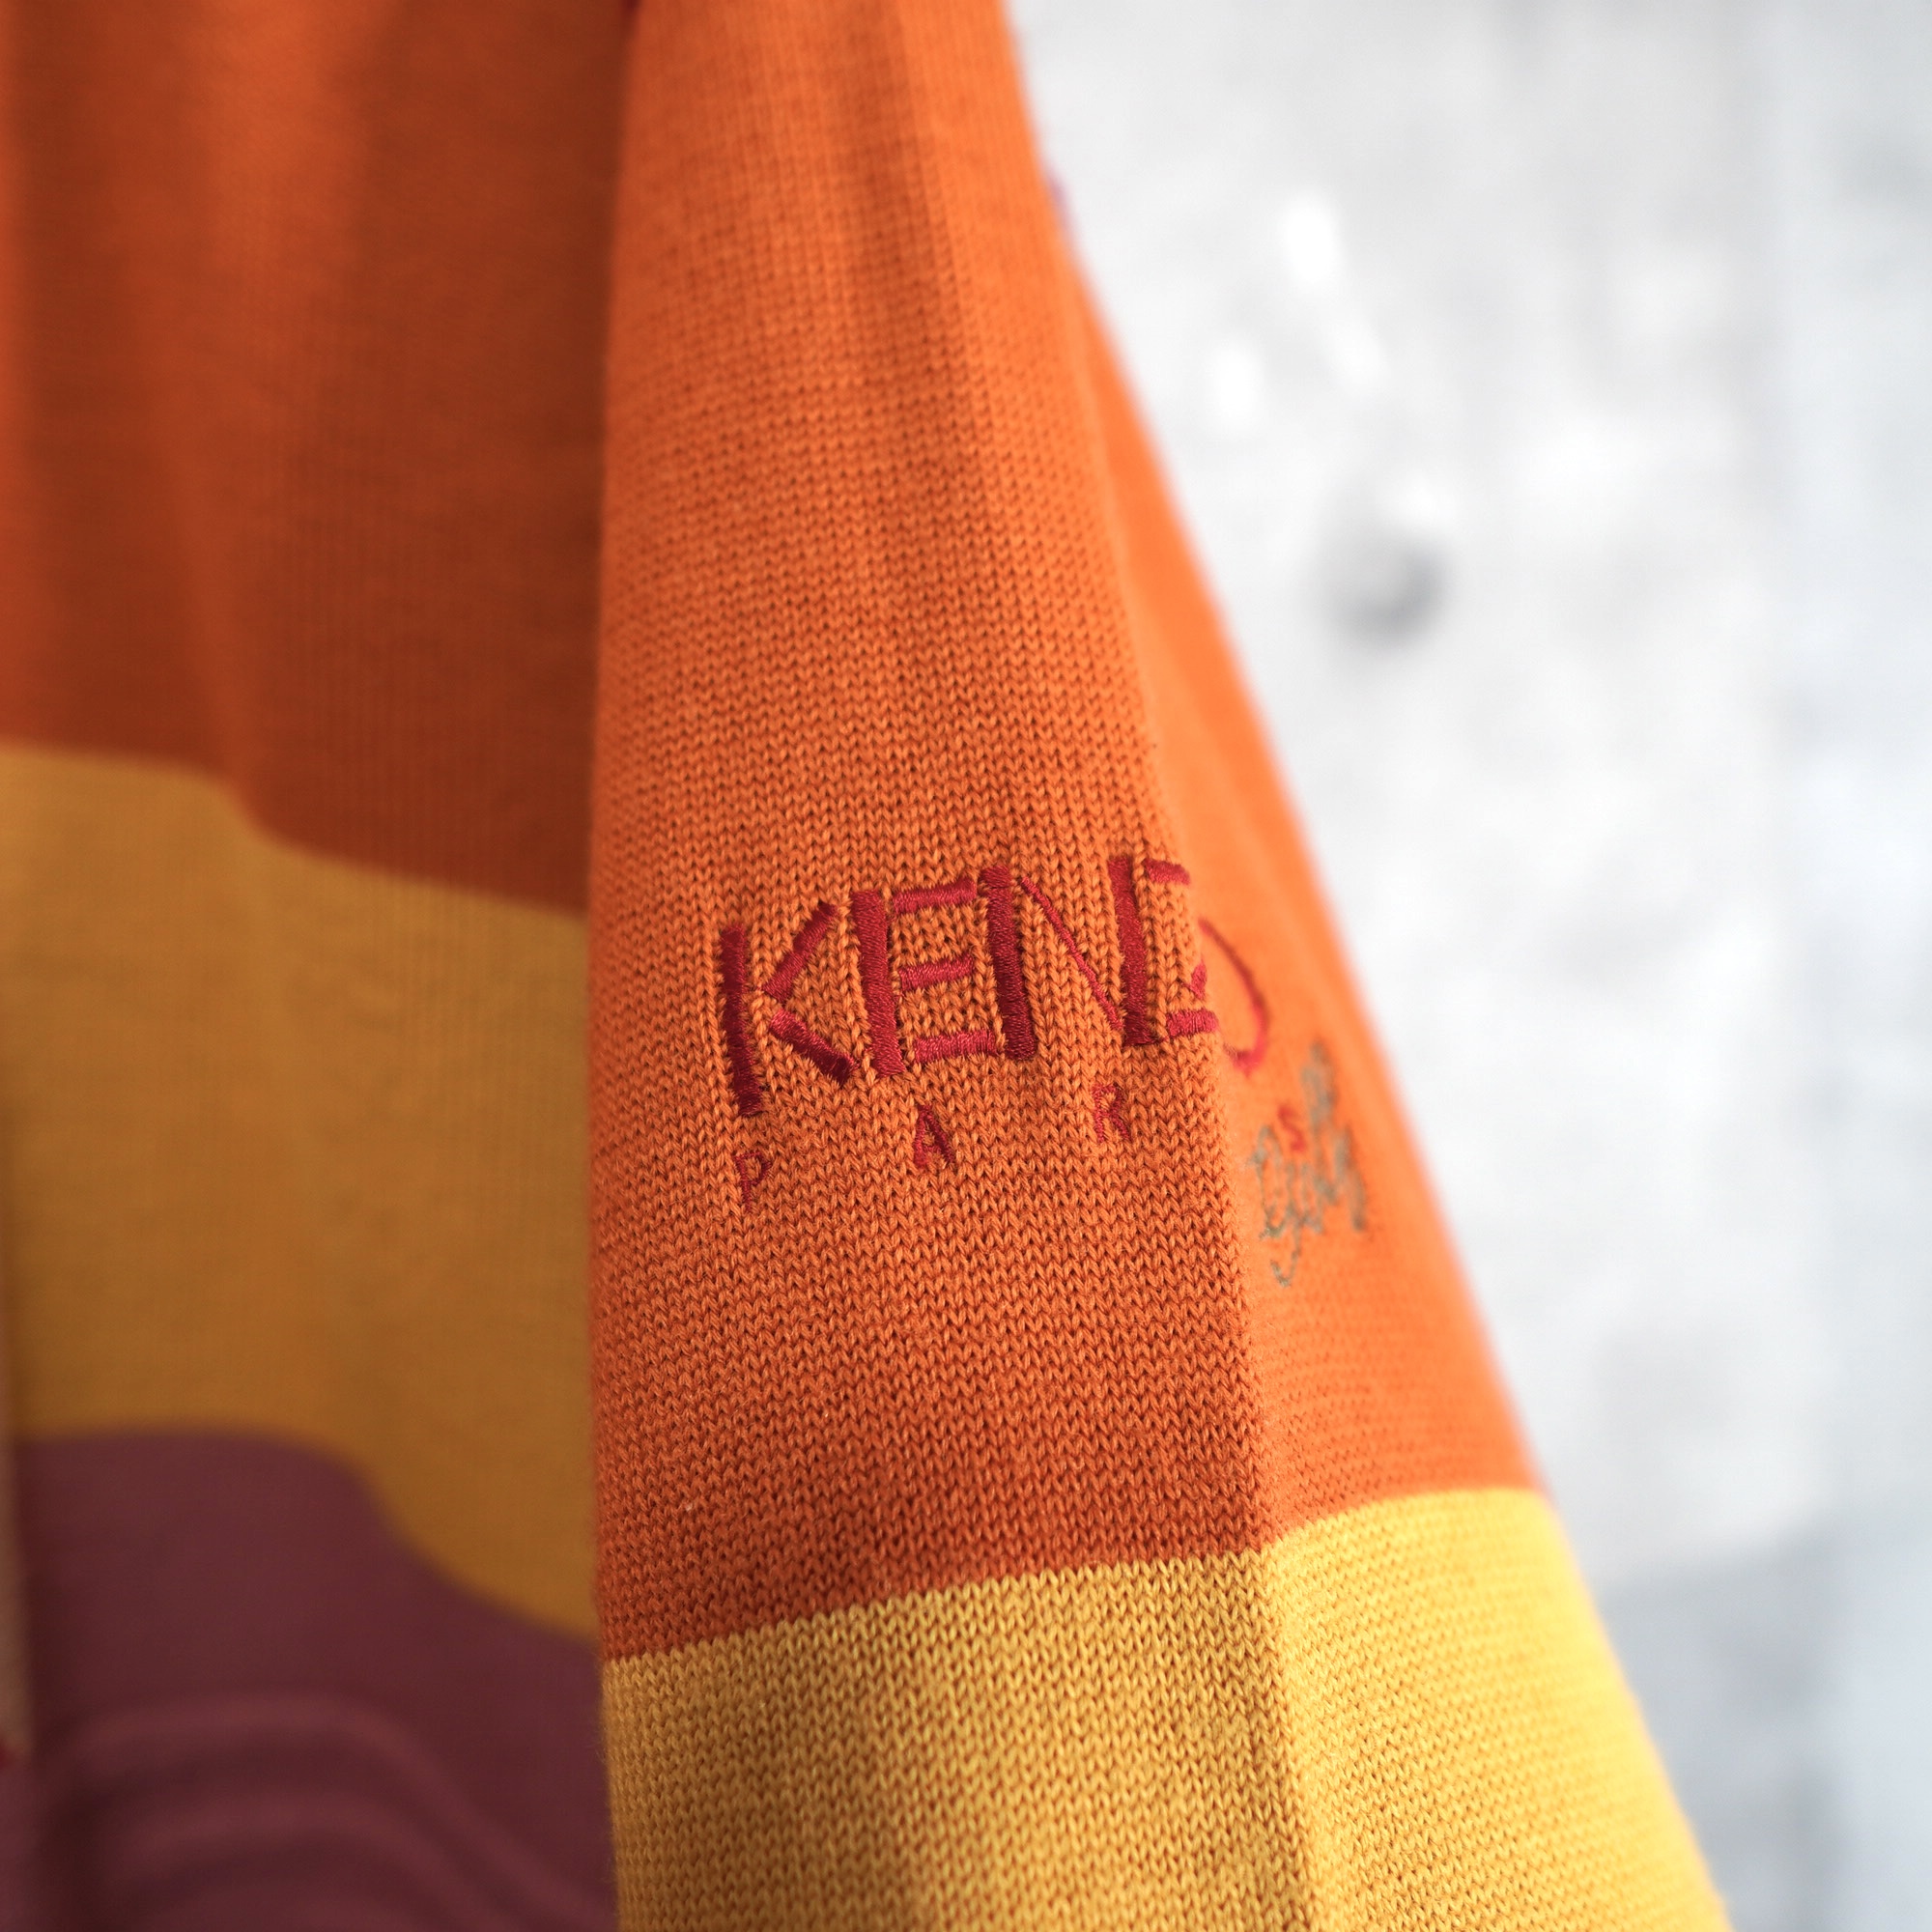 KENZO ケンゾー ニット セーター ロゴデザイン 日本製 Lサイズ